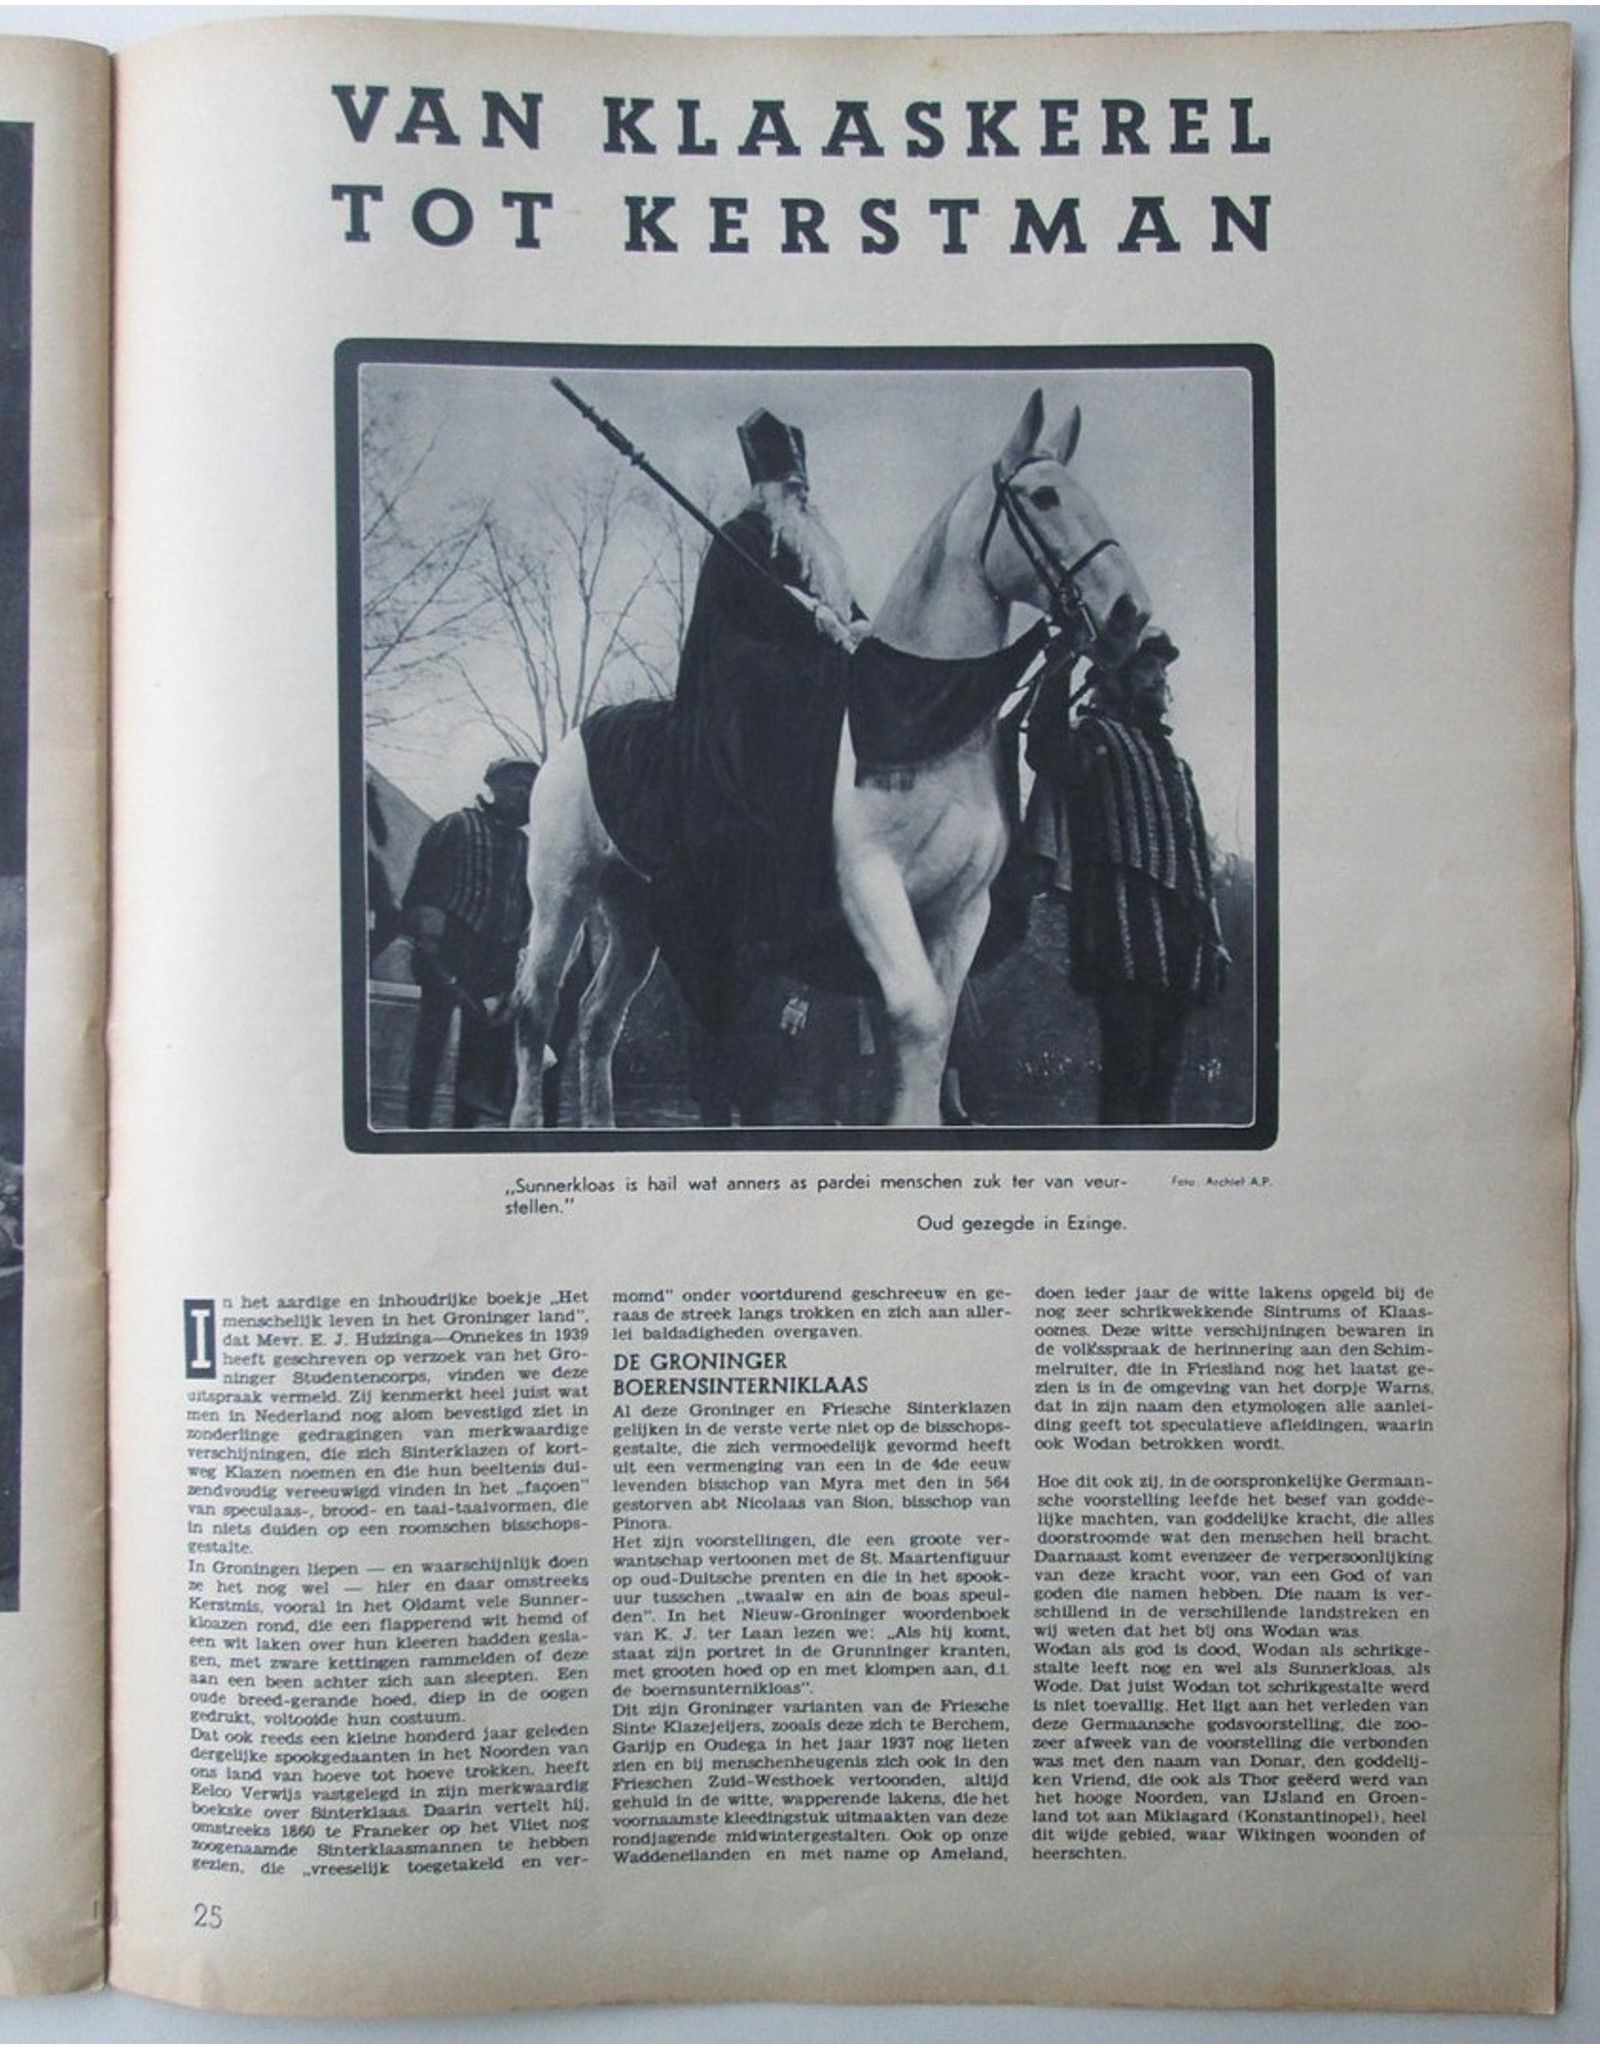 [Sinterklaas] in: Hamer Maandblad Nr. 3 - December 1940